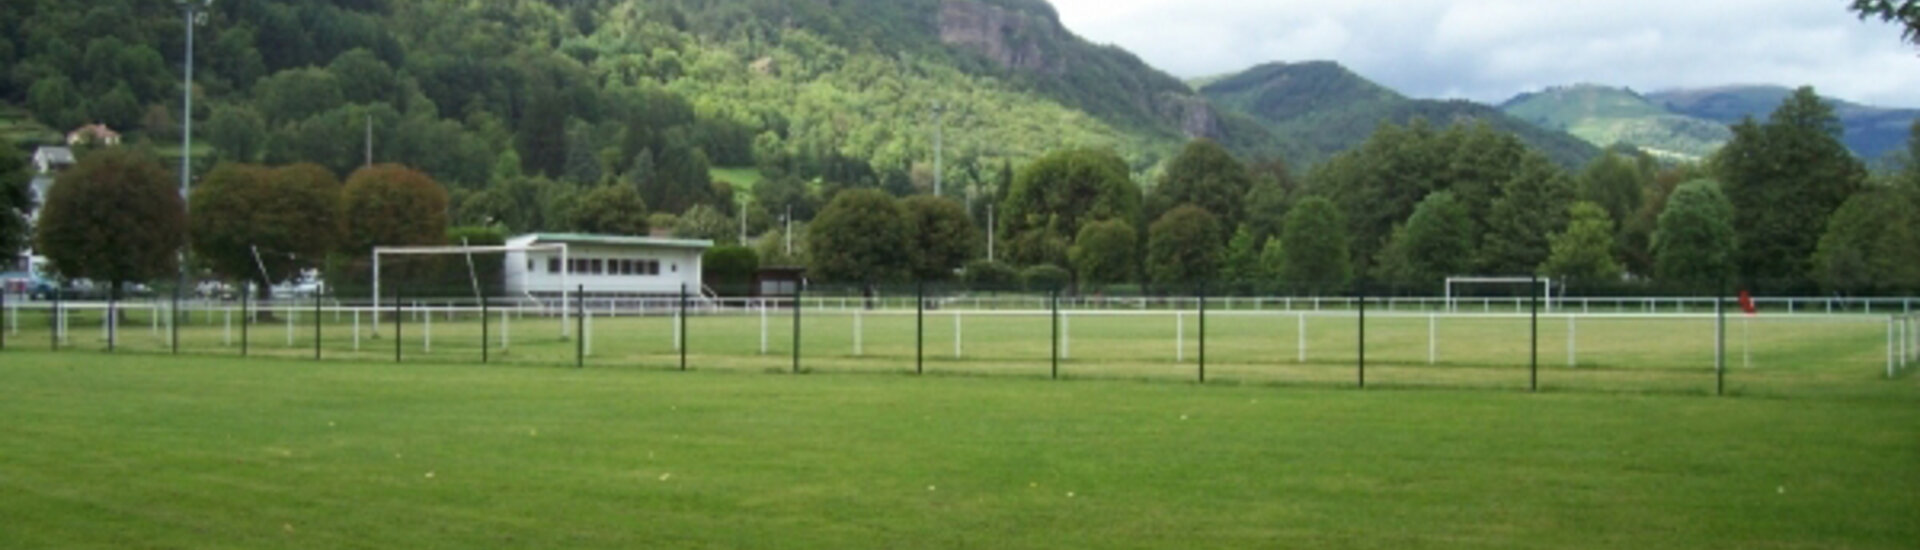 Cère FC Footbal Club Tournoi Cantal Vic-sur-Cère